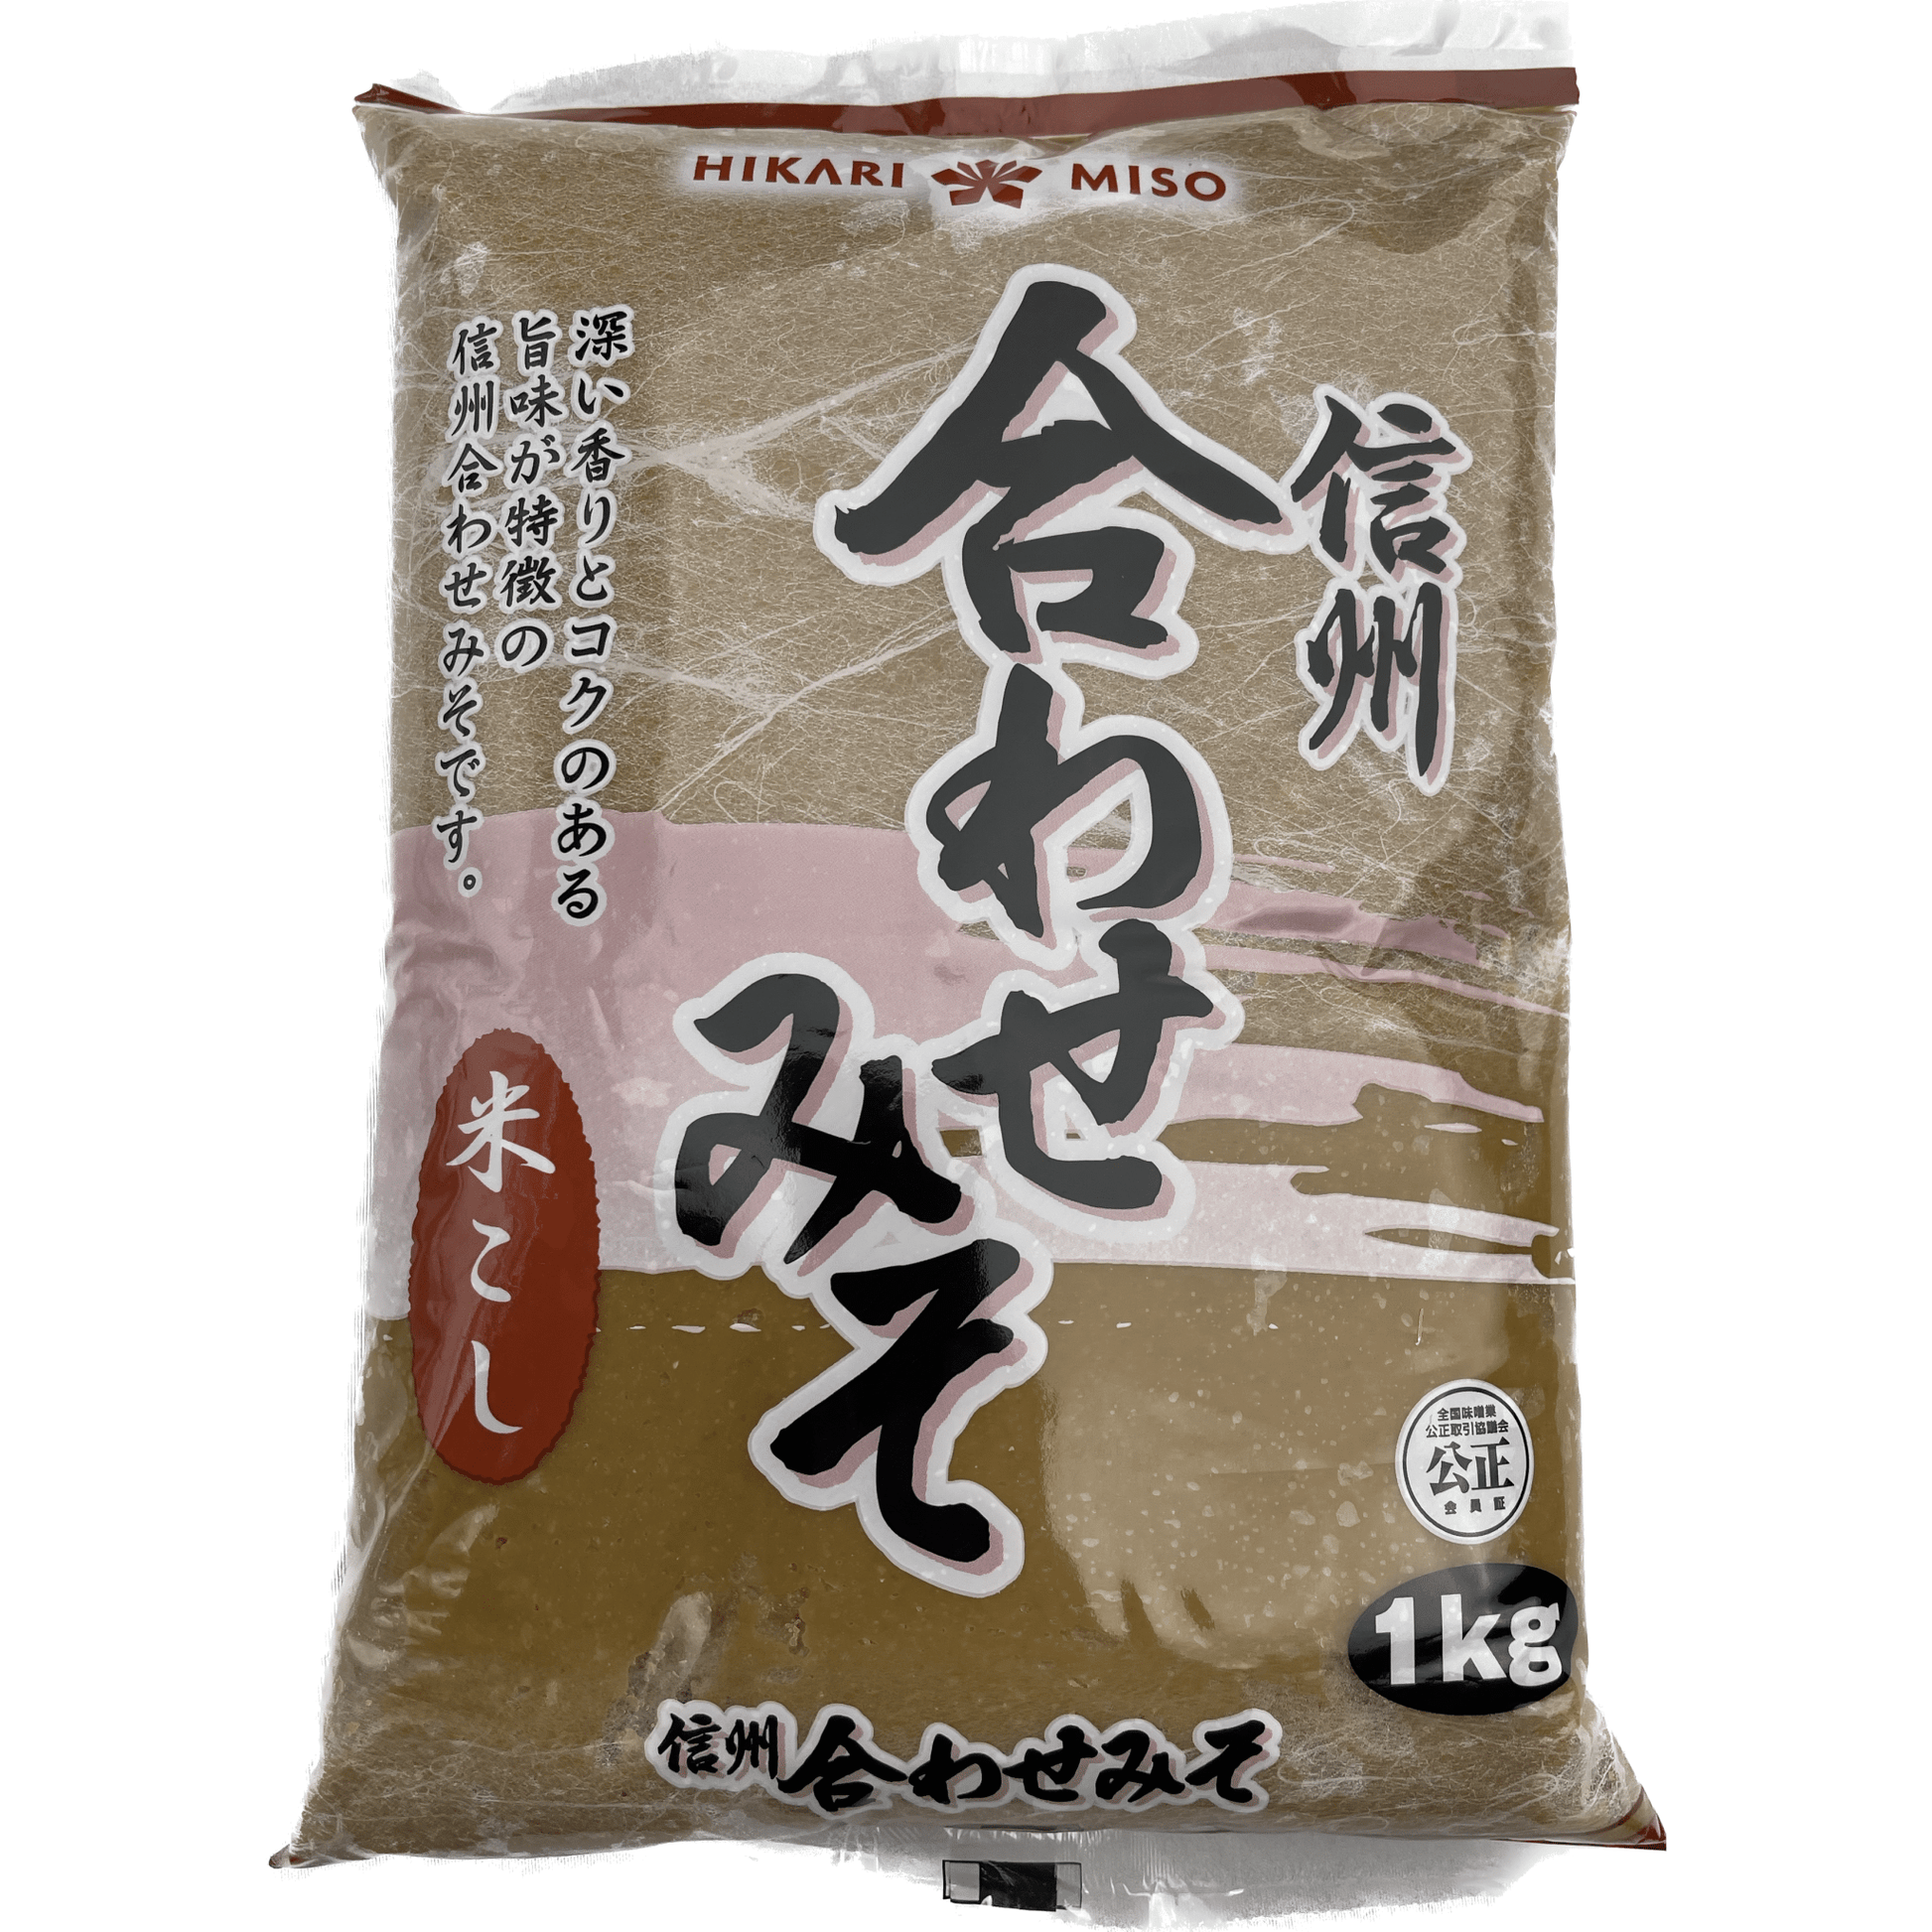 HikariMiso Shinshu Awase Miso 1kg / ひかり味噌 信州合わせみそ 米こし袋 1kg - RiceWineShop